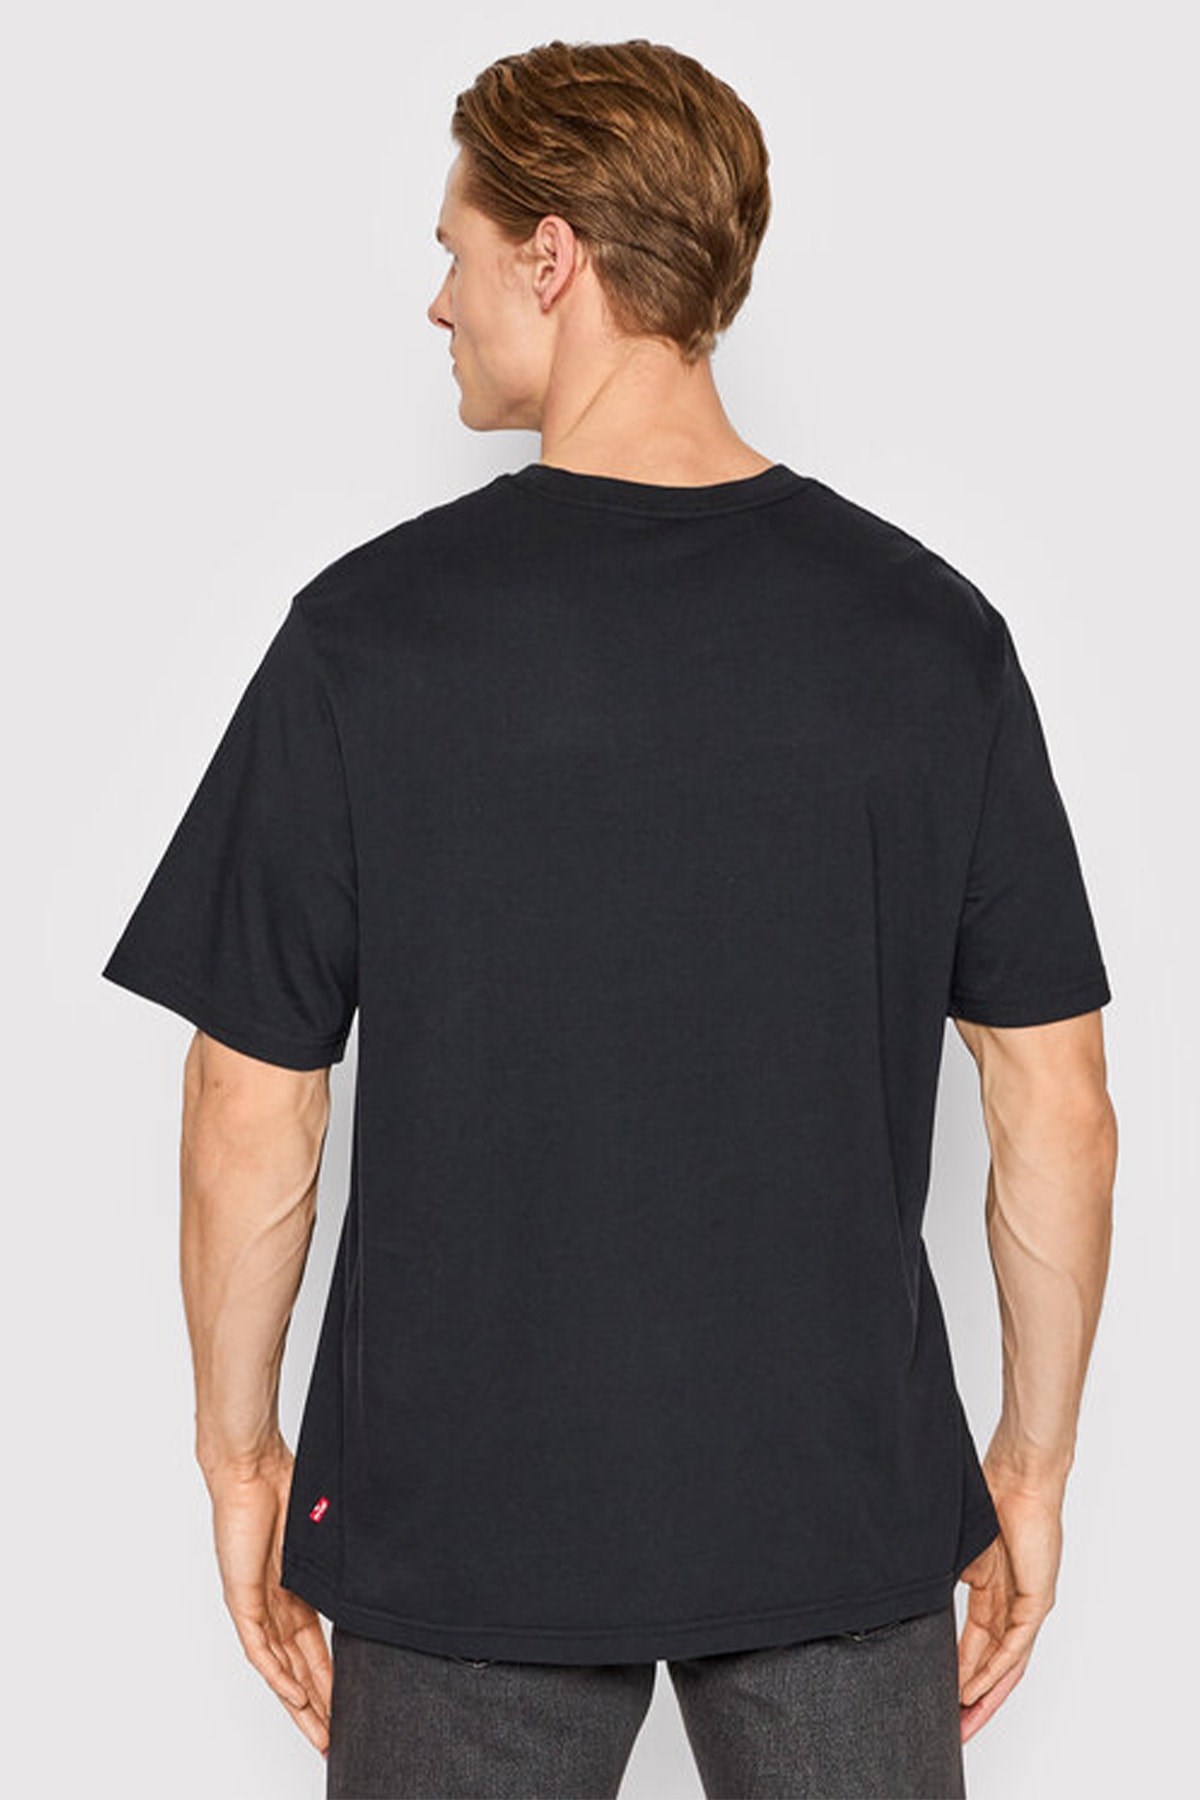 Levis Erkek T-Shirt 16143-0543 